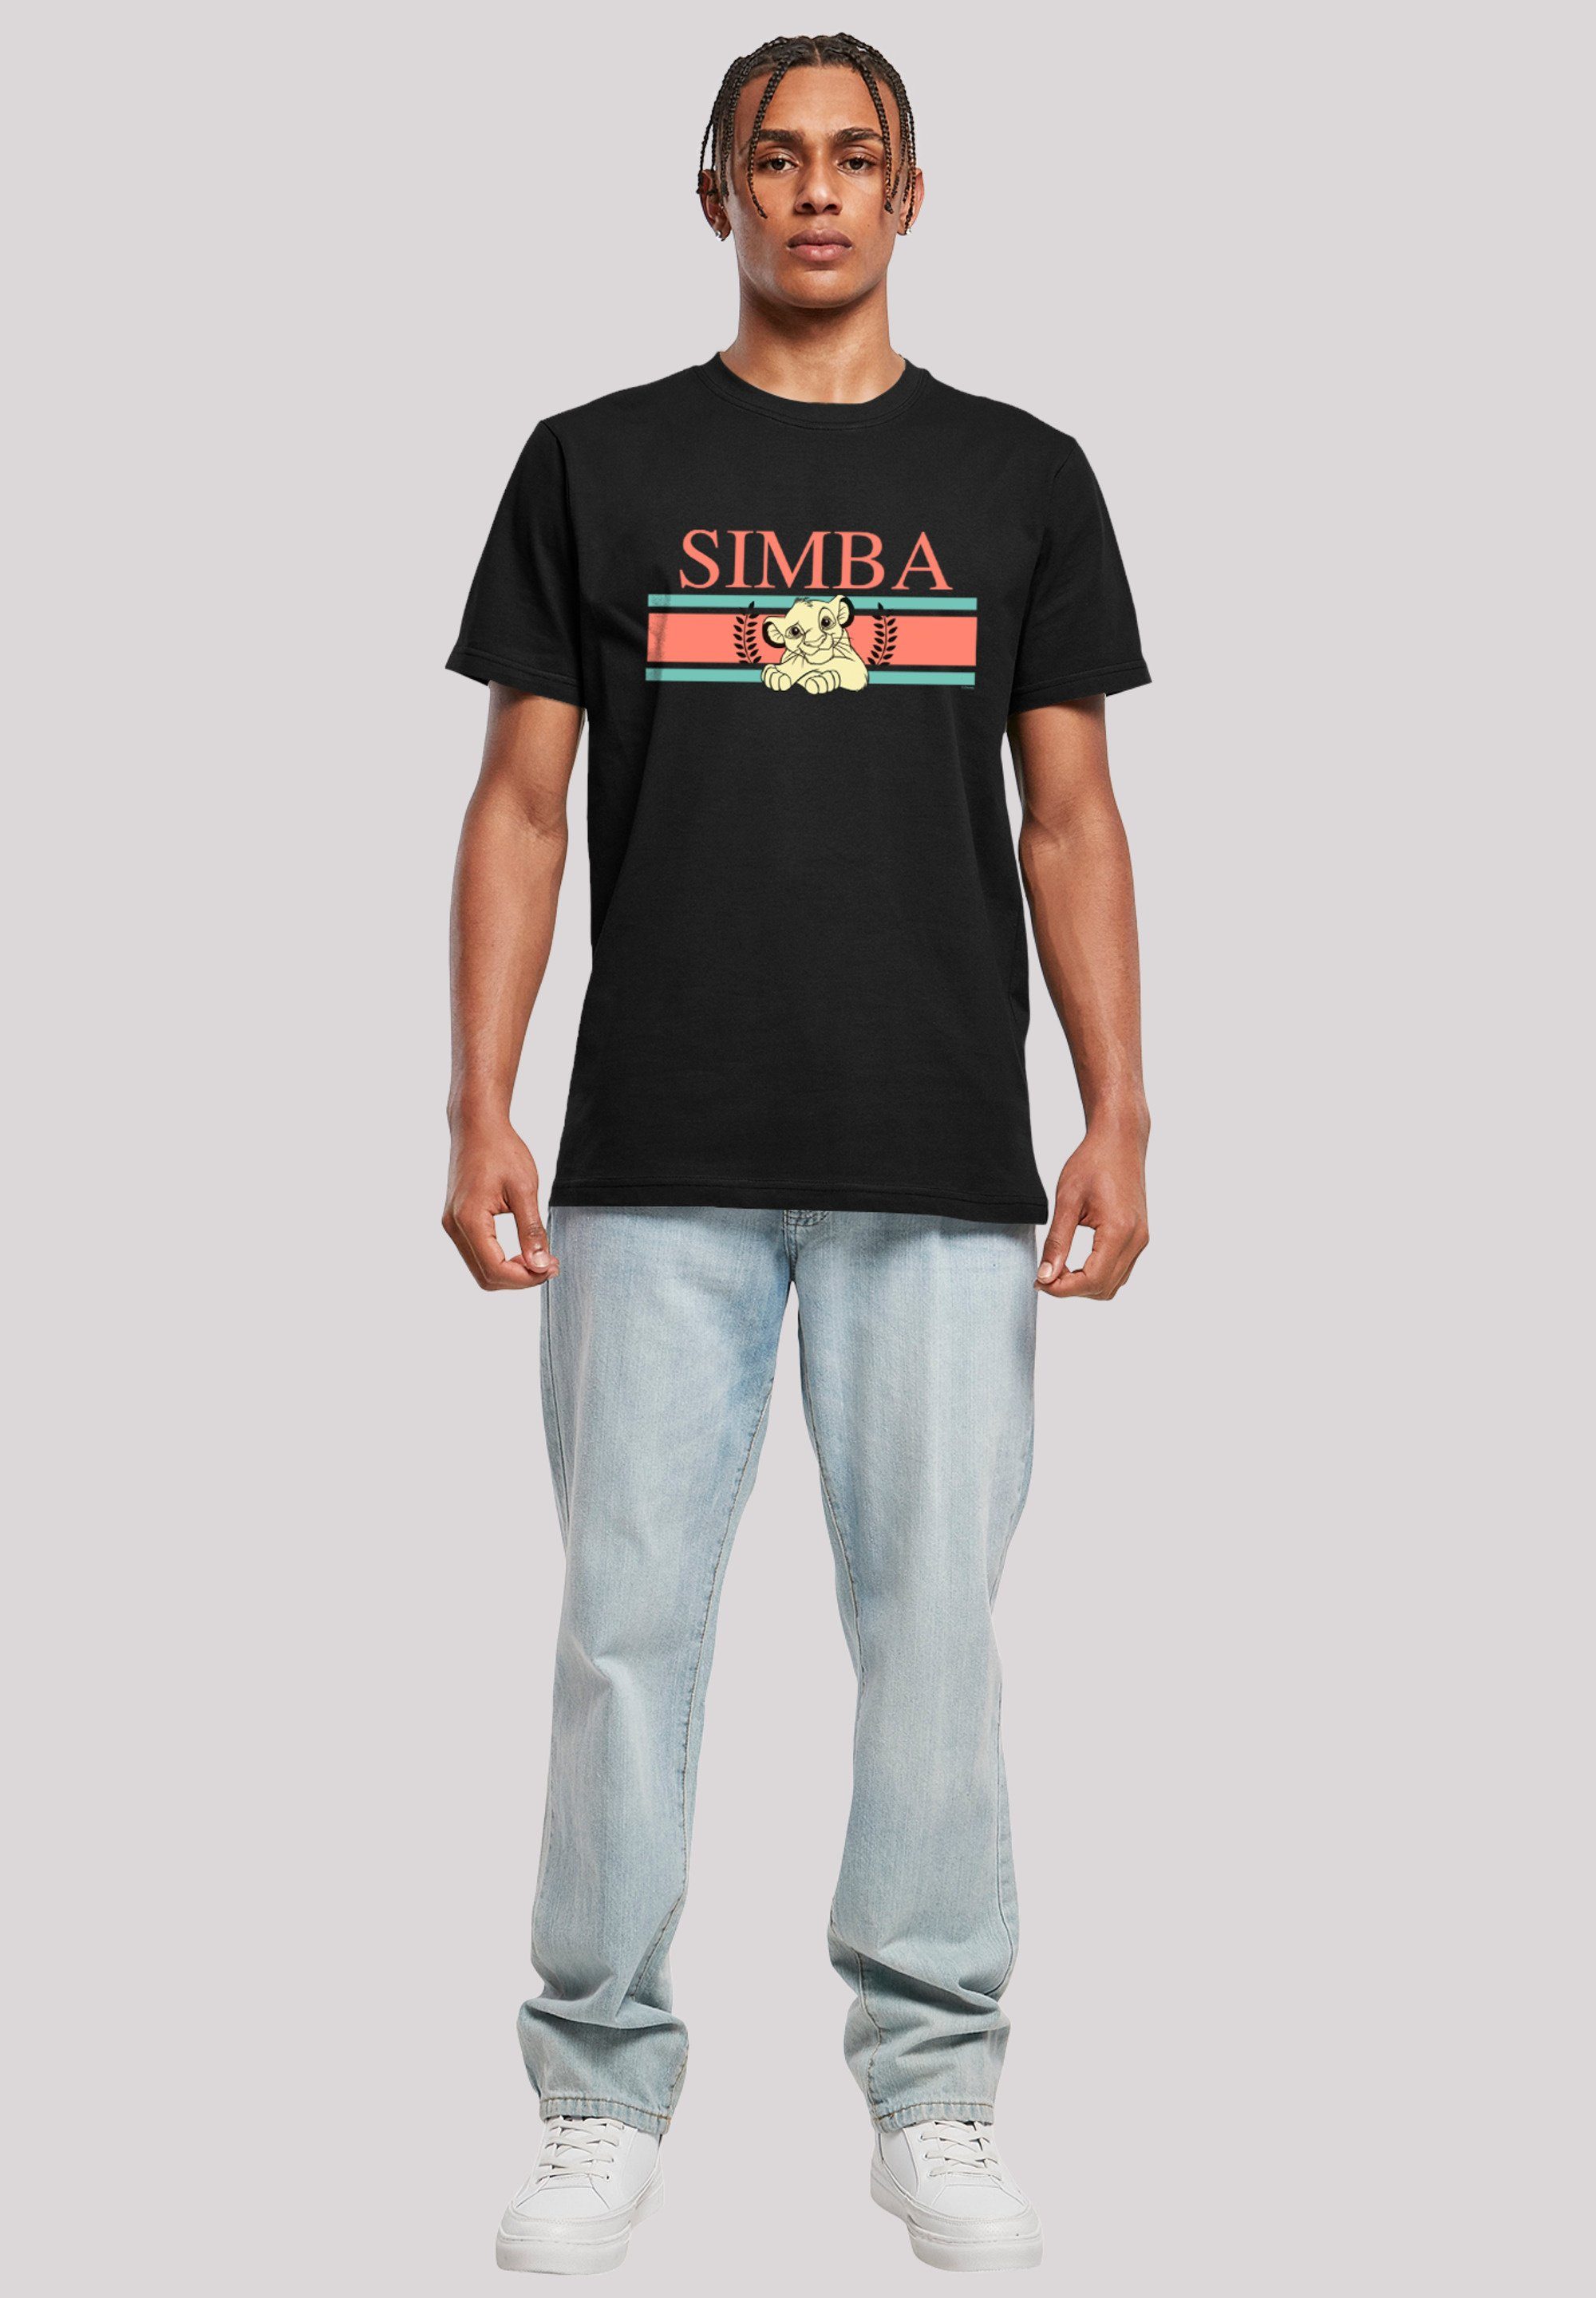 F4NT4STIC T-Shirt Disney König der Print Simba schwarz Stripes Löwen